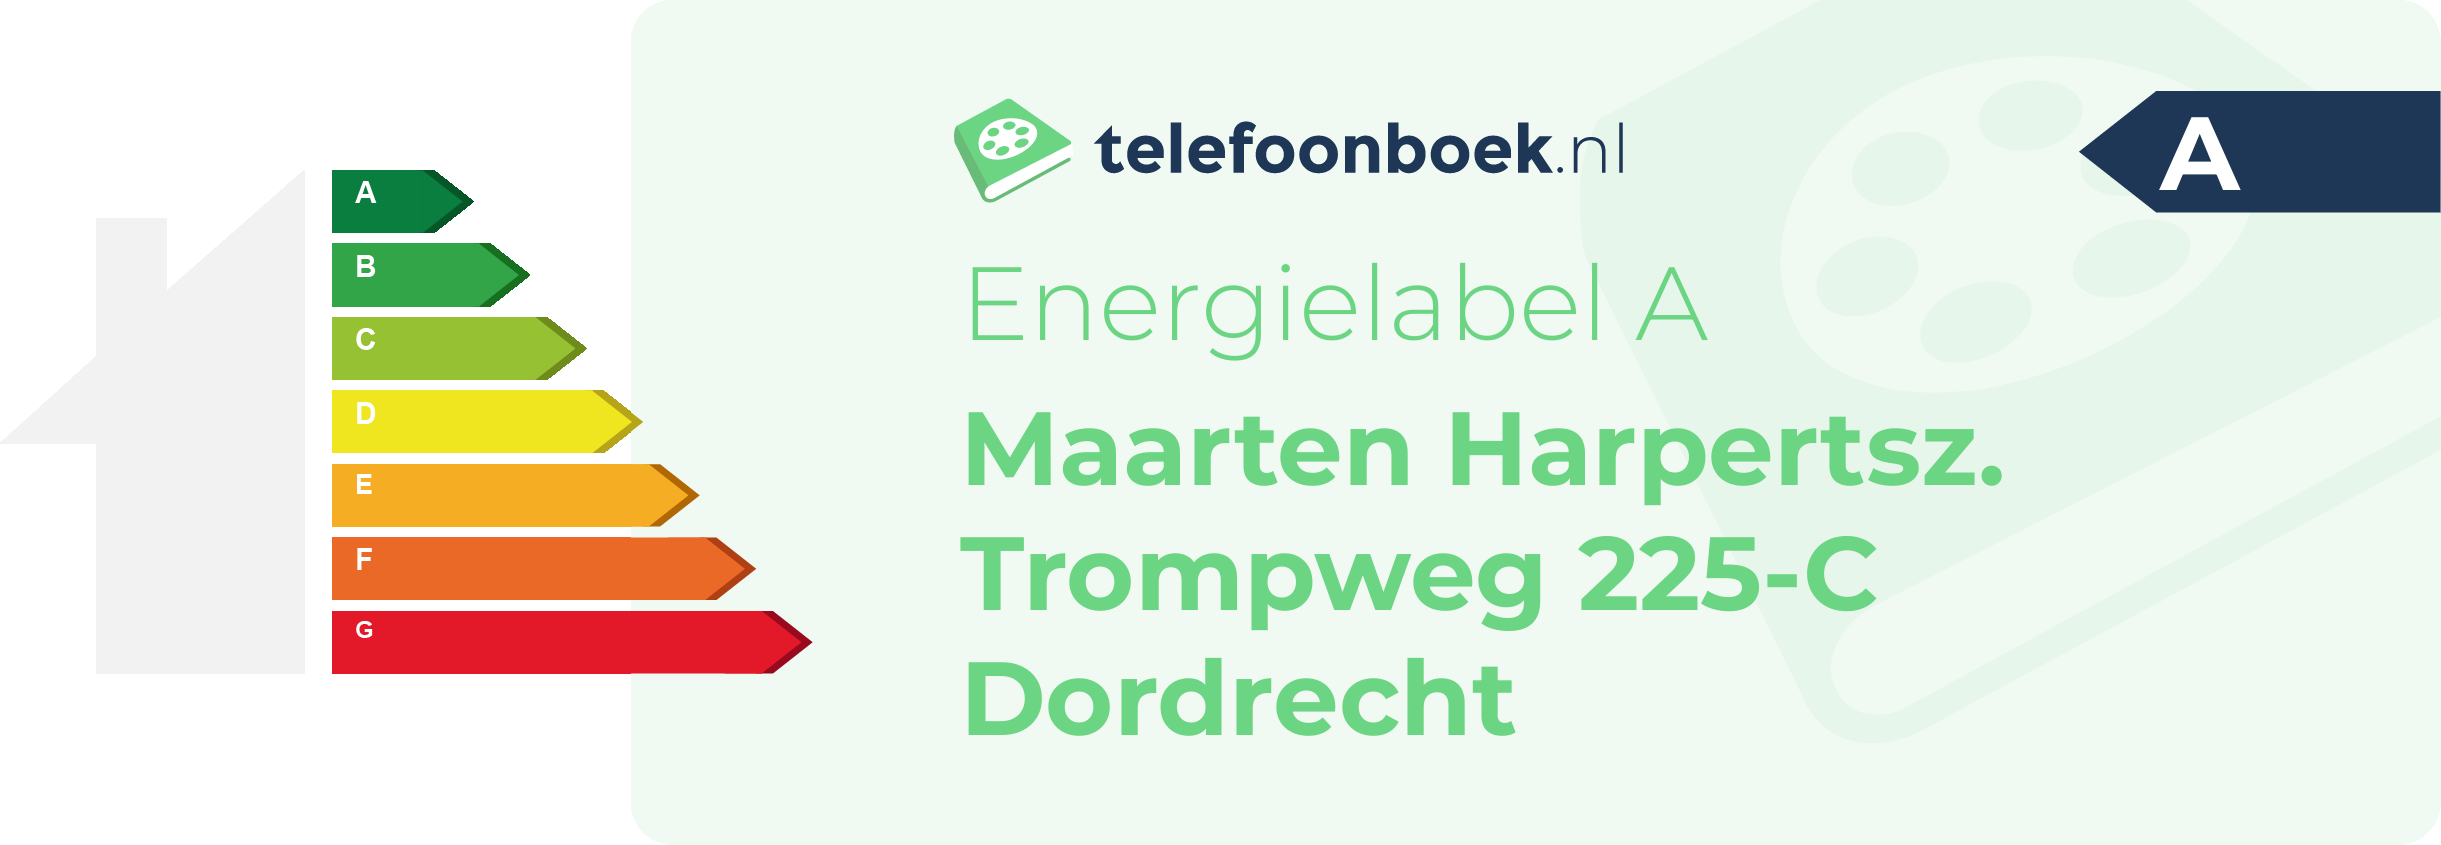 Energielabel Maarten Harpertsz. Trompweg 225-C Dordrecht